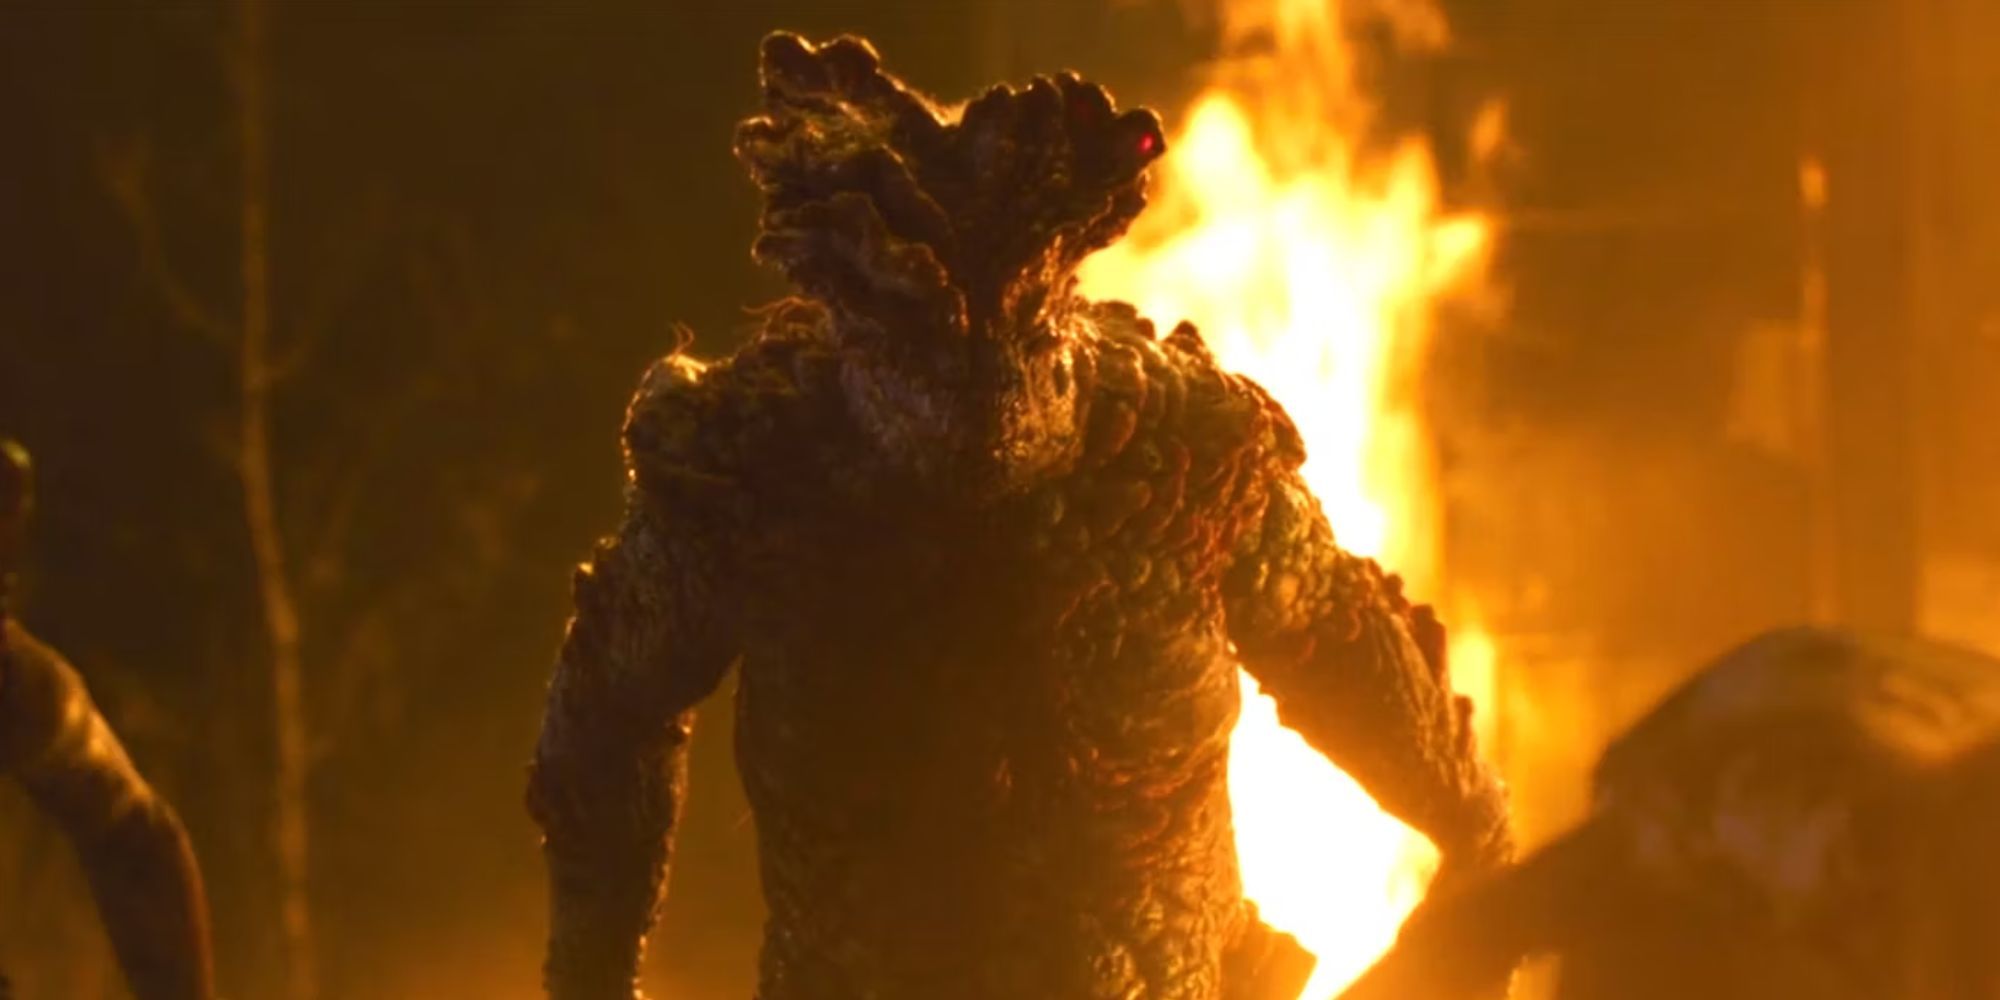 La hinchazón de The Last of Us, un zombi gigante.  Párate frente al fuego